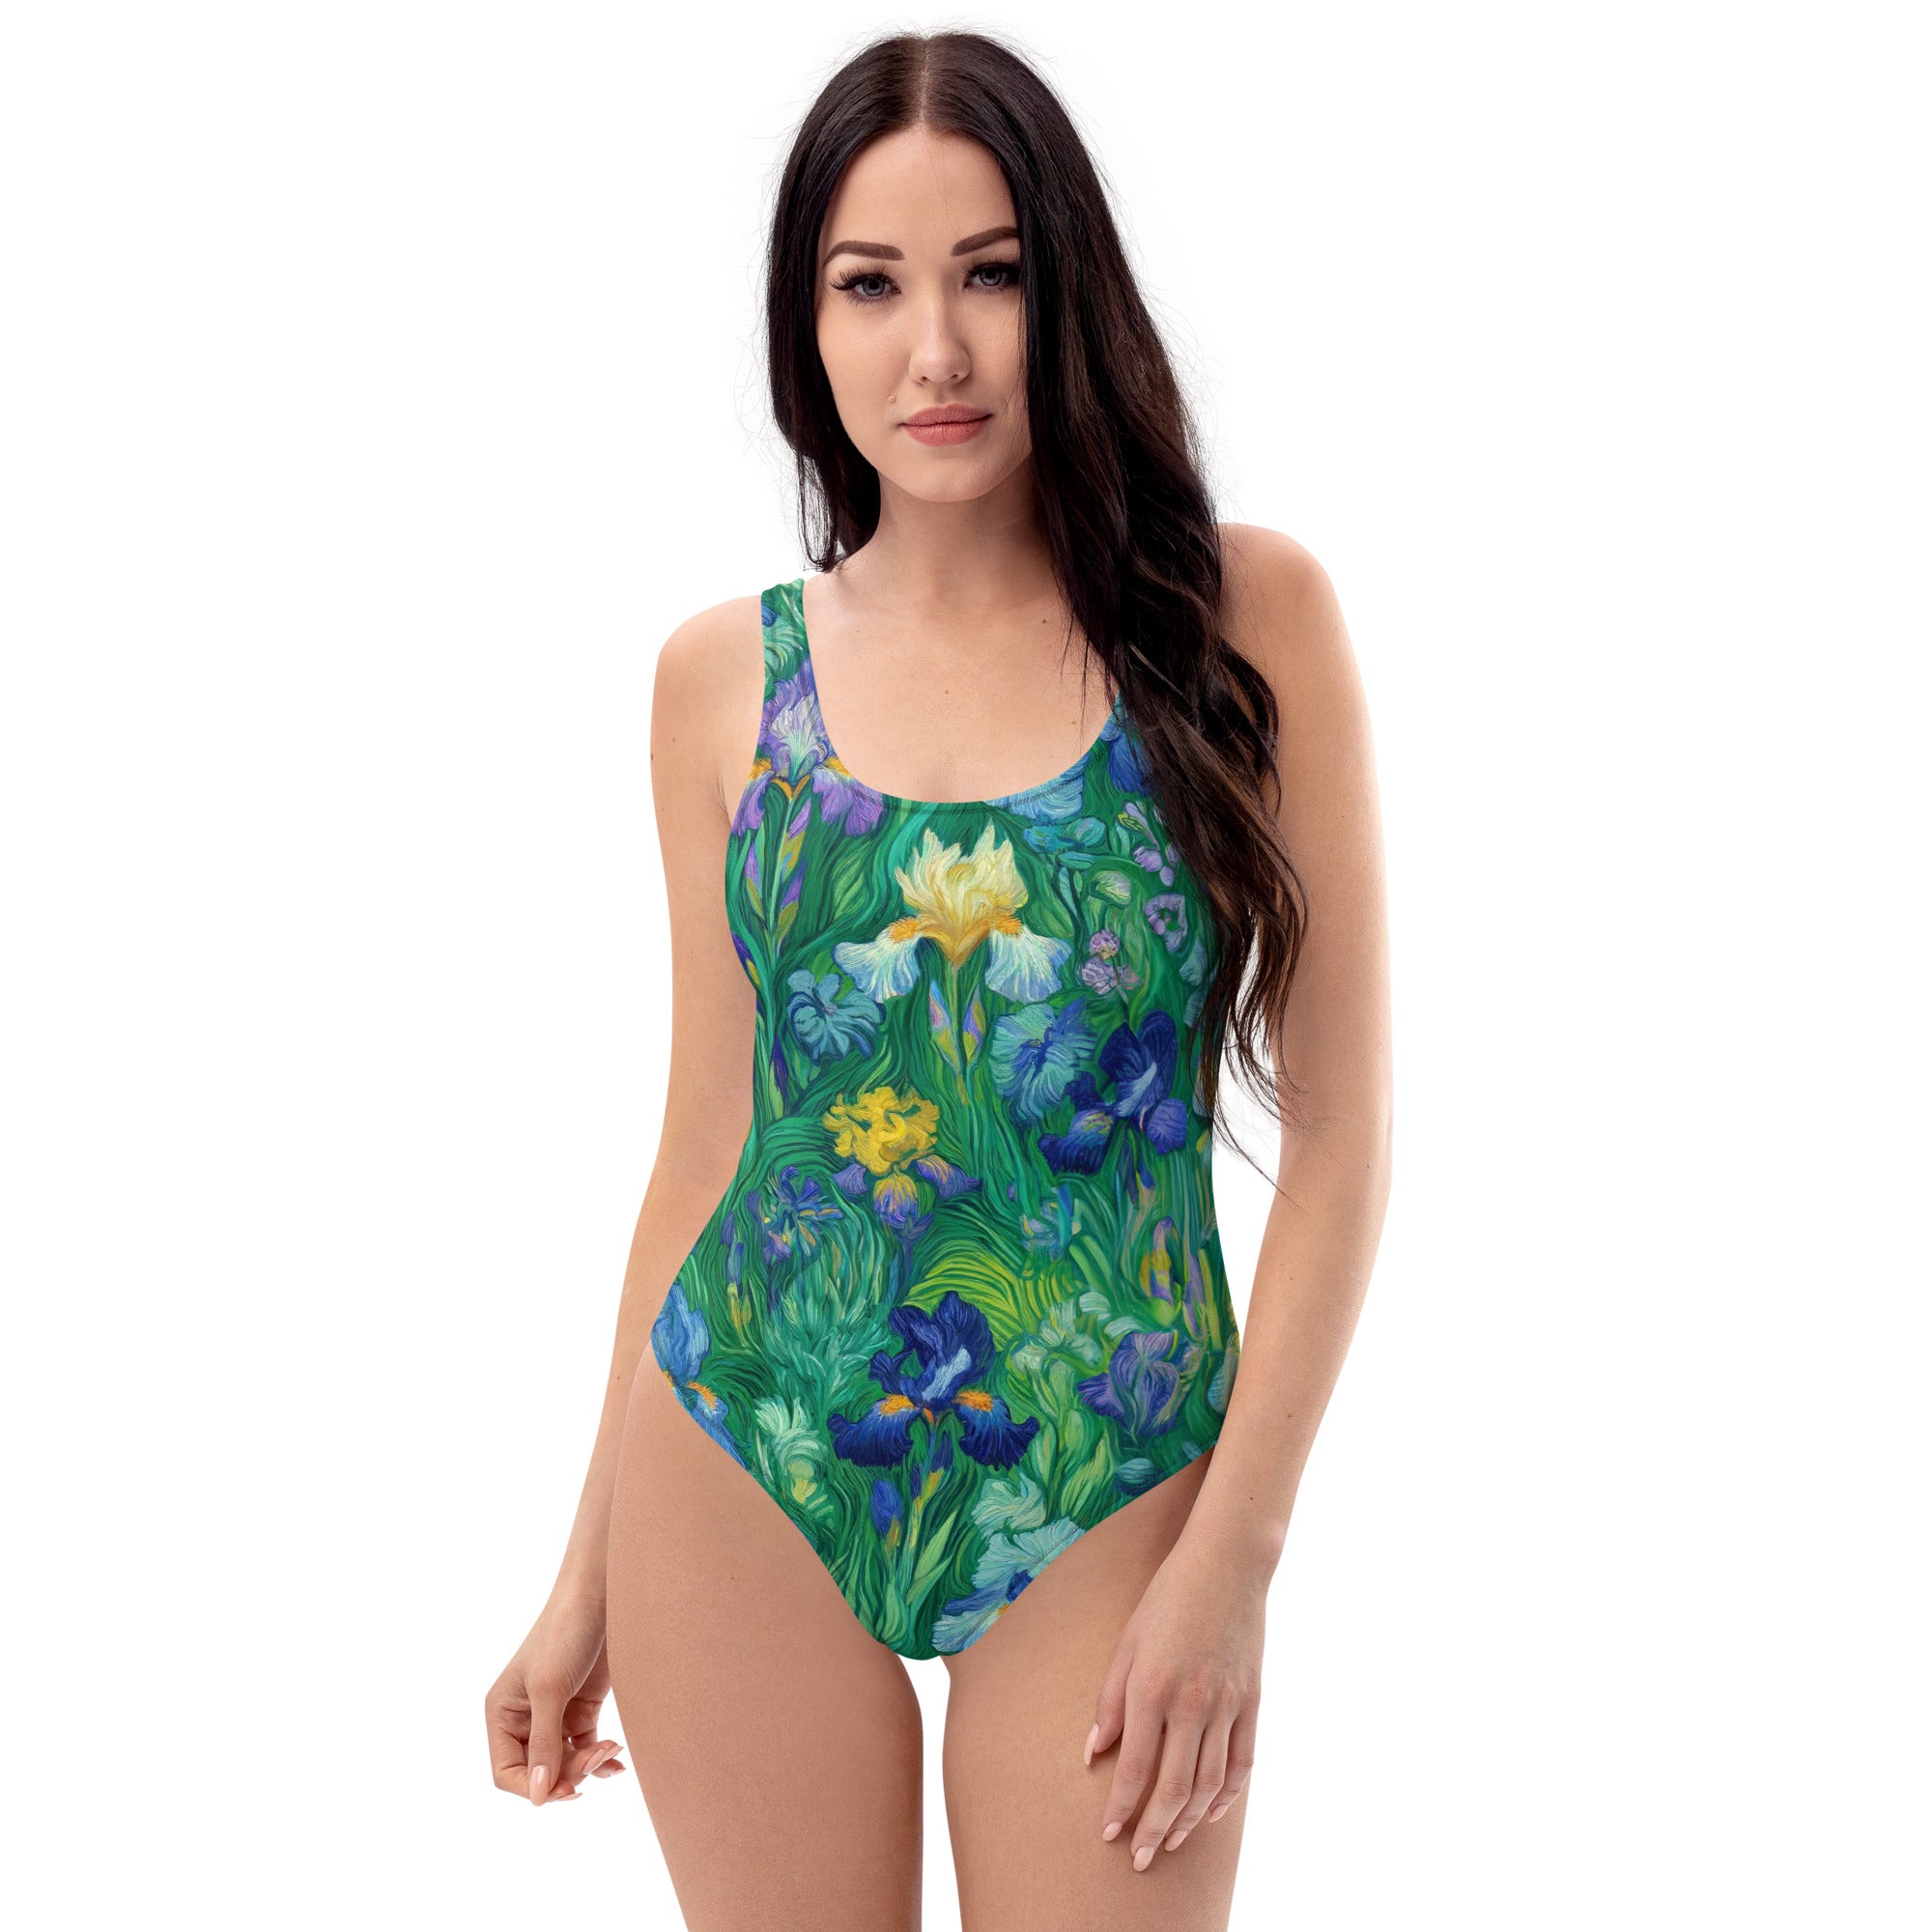 Vincent van Gogh 'Irises' Famous Painting Swimsuit | Premium Art One Piece Swimsuit